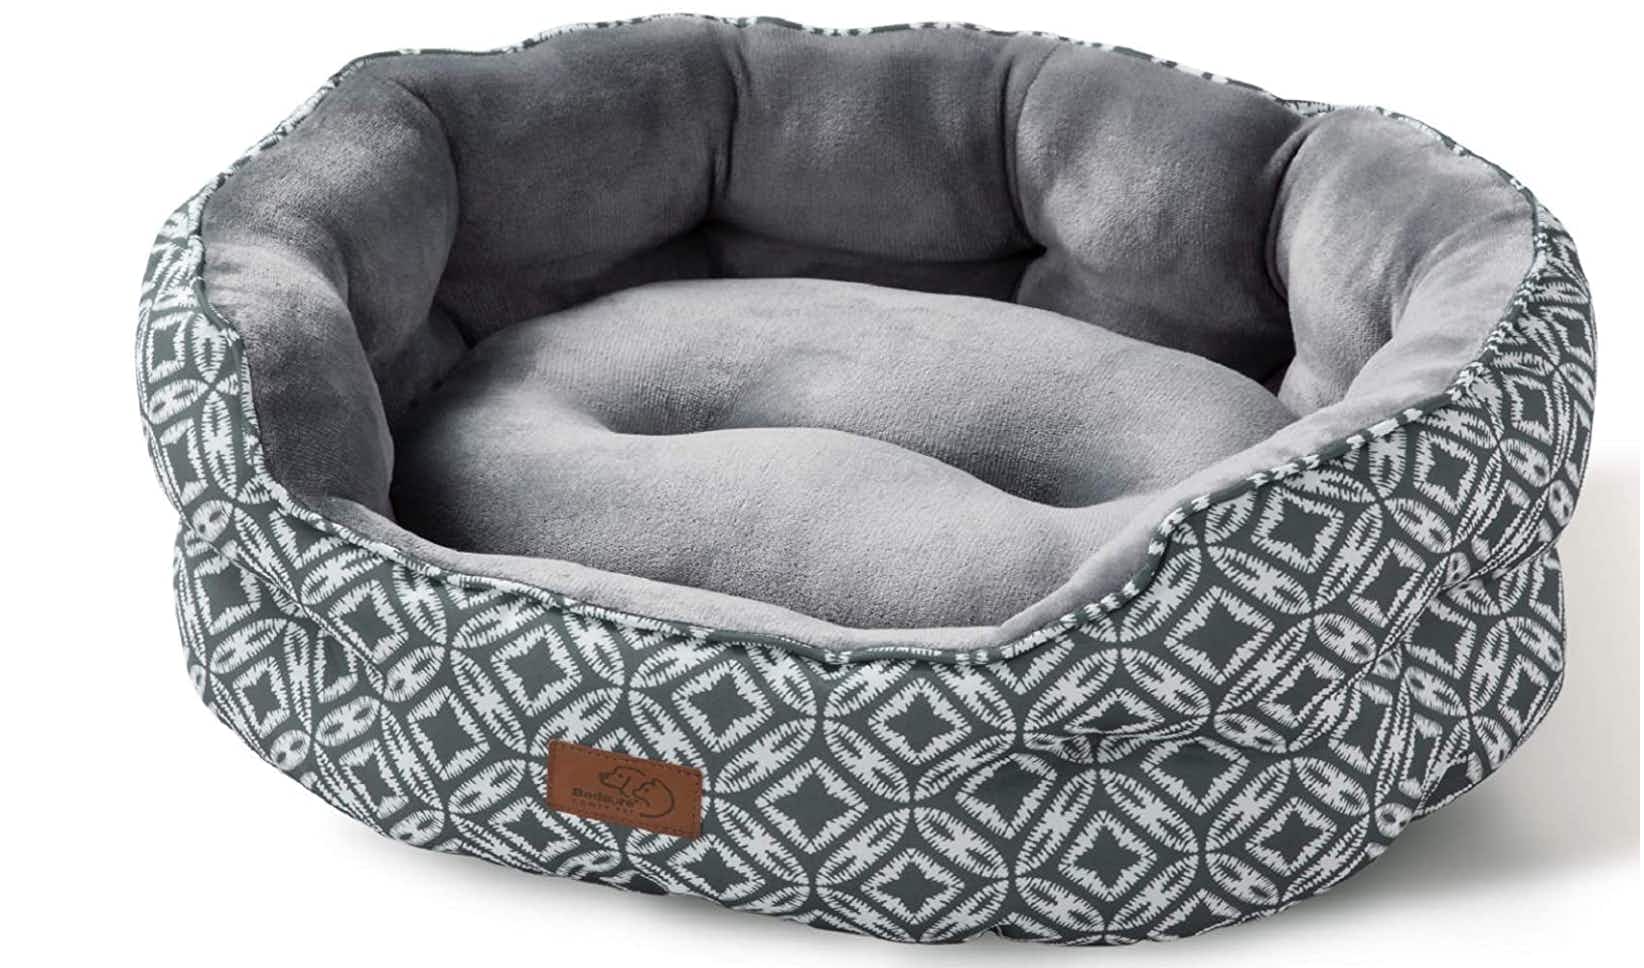 Bedsure Small Dog Bed 